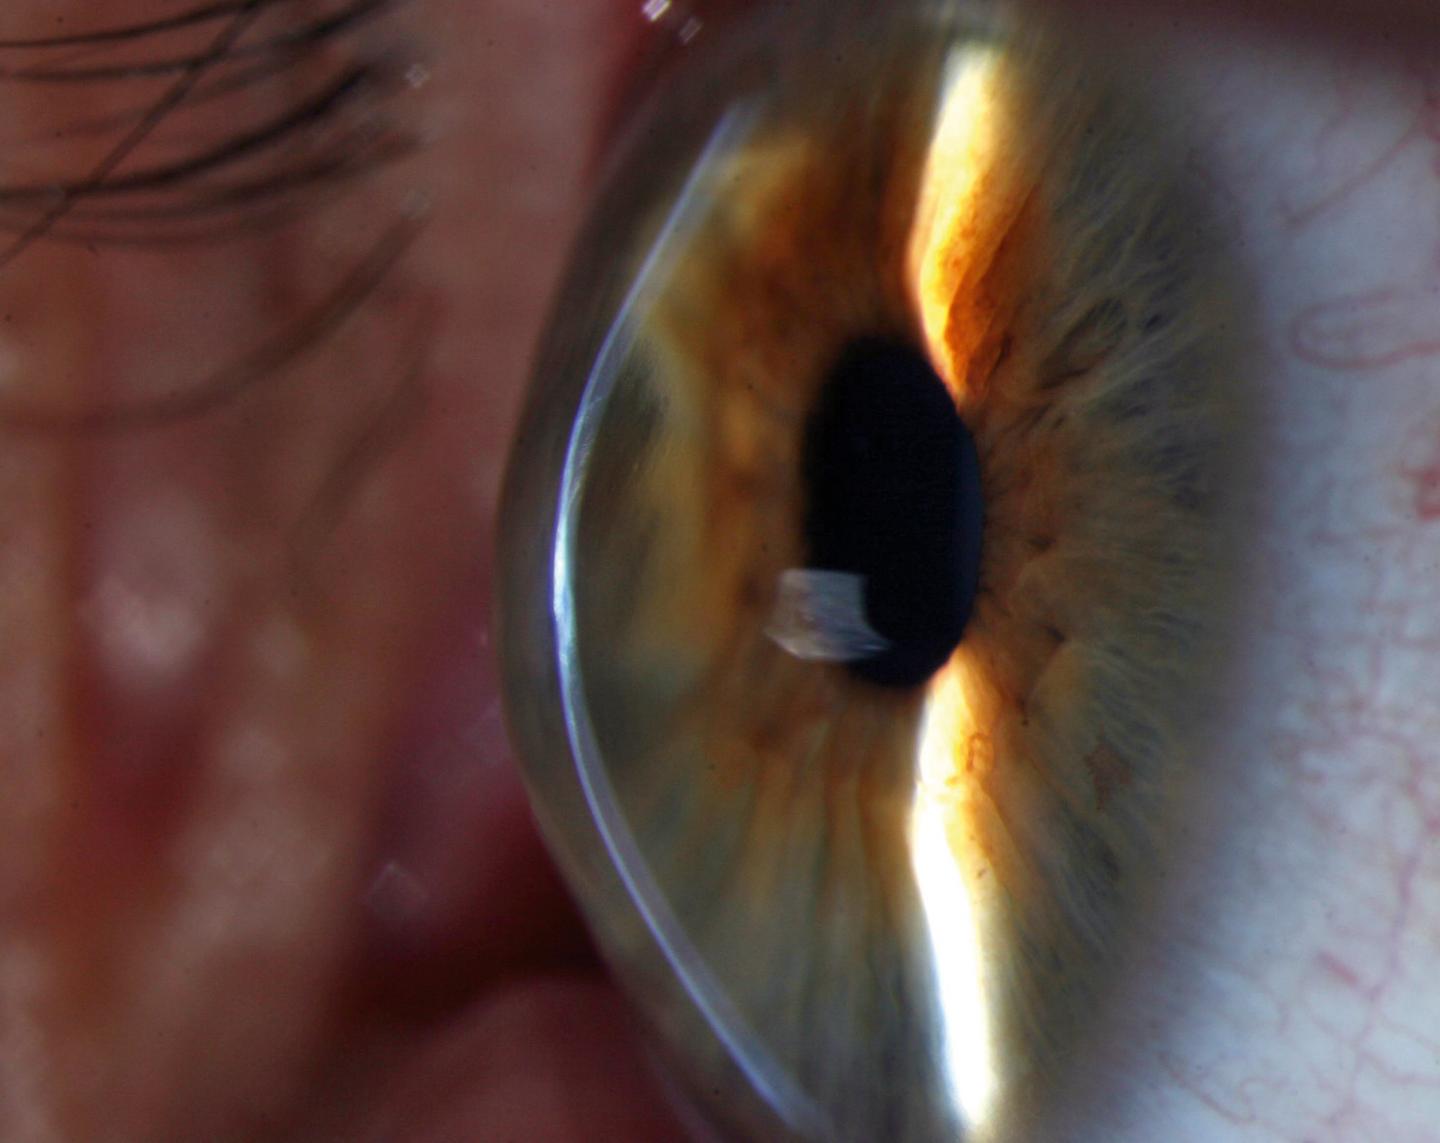 The cornea of a keratoconus patient